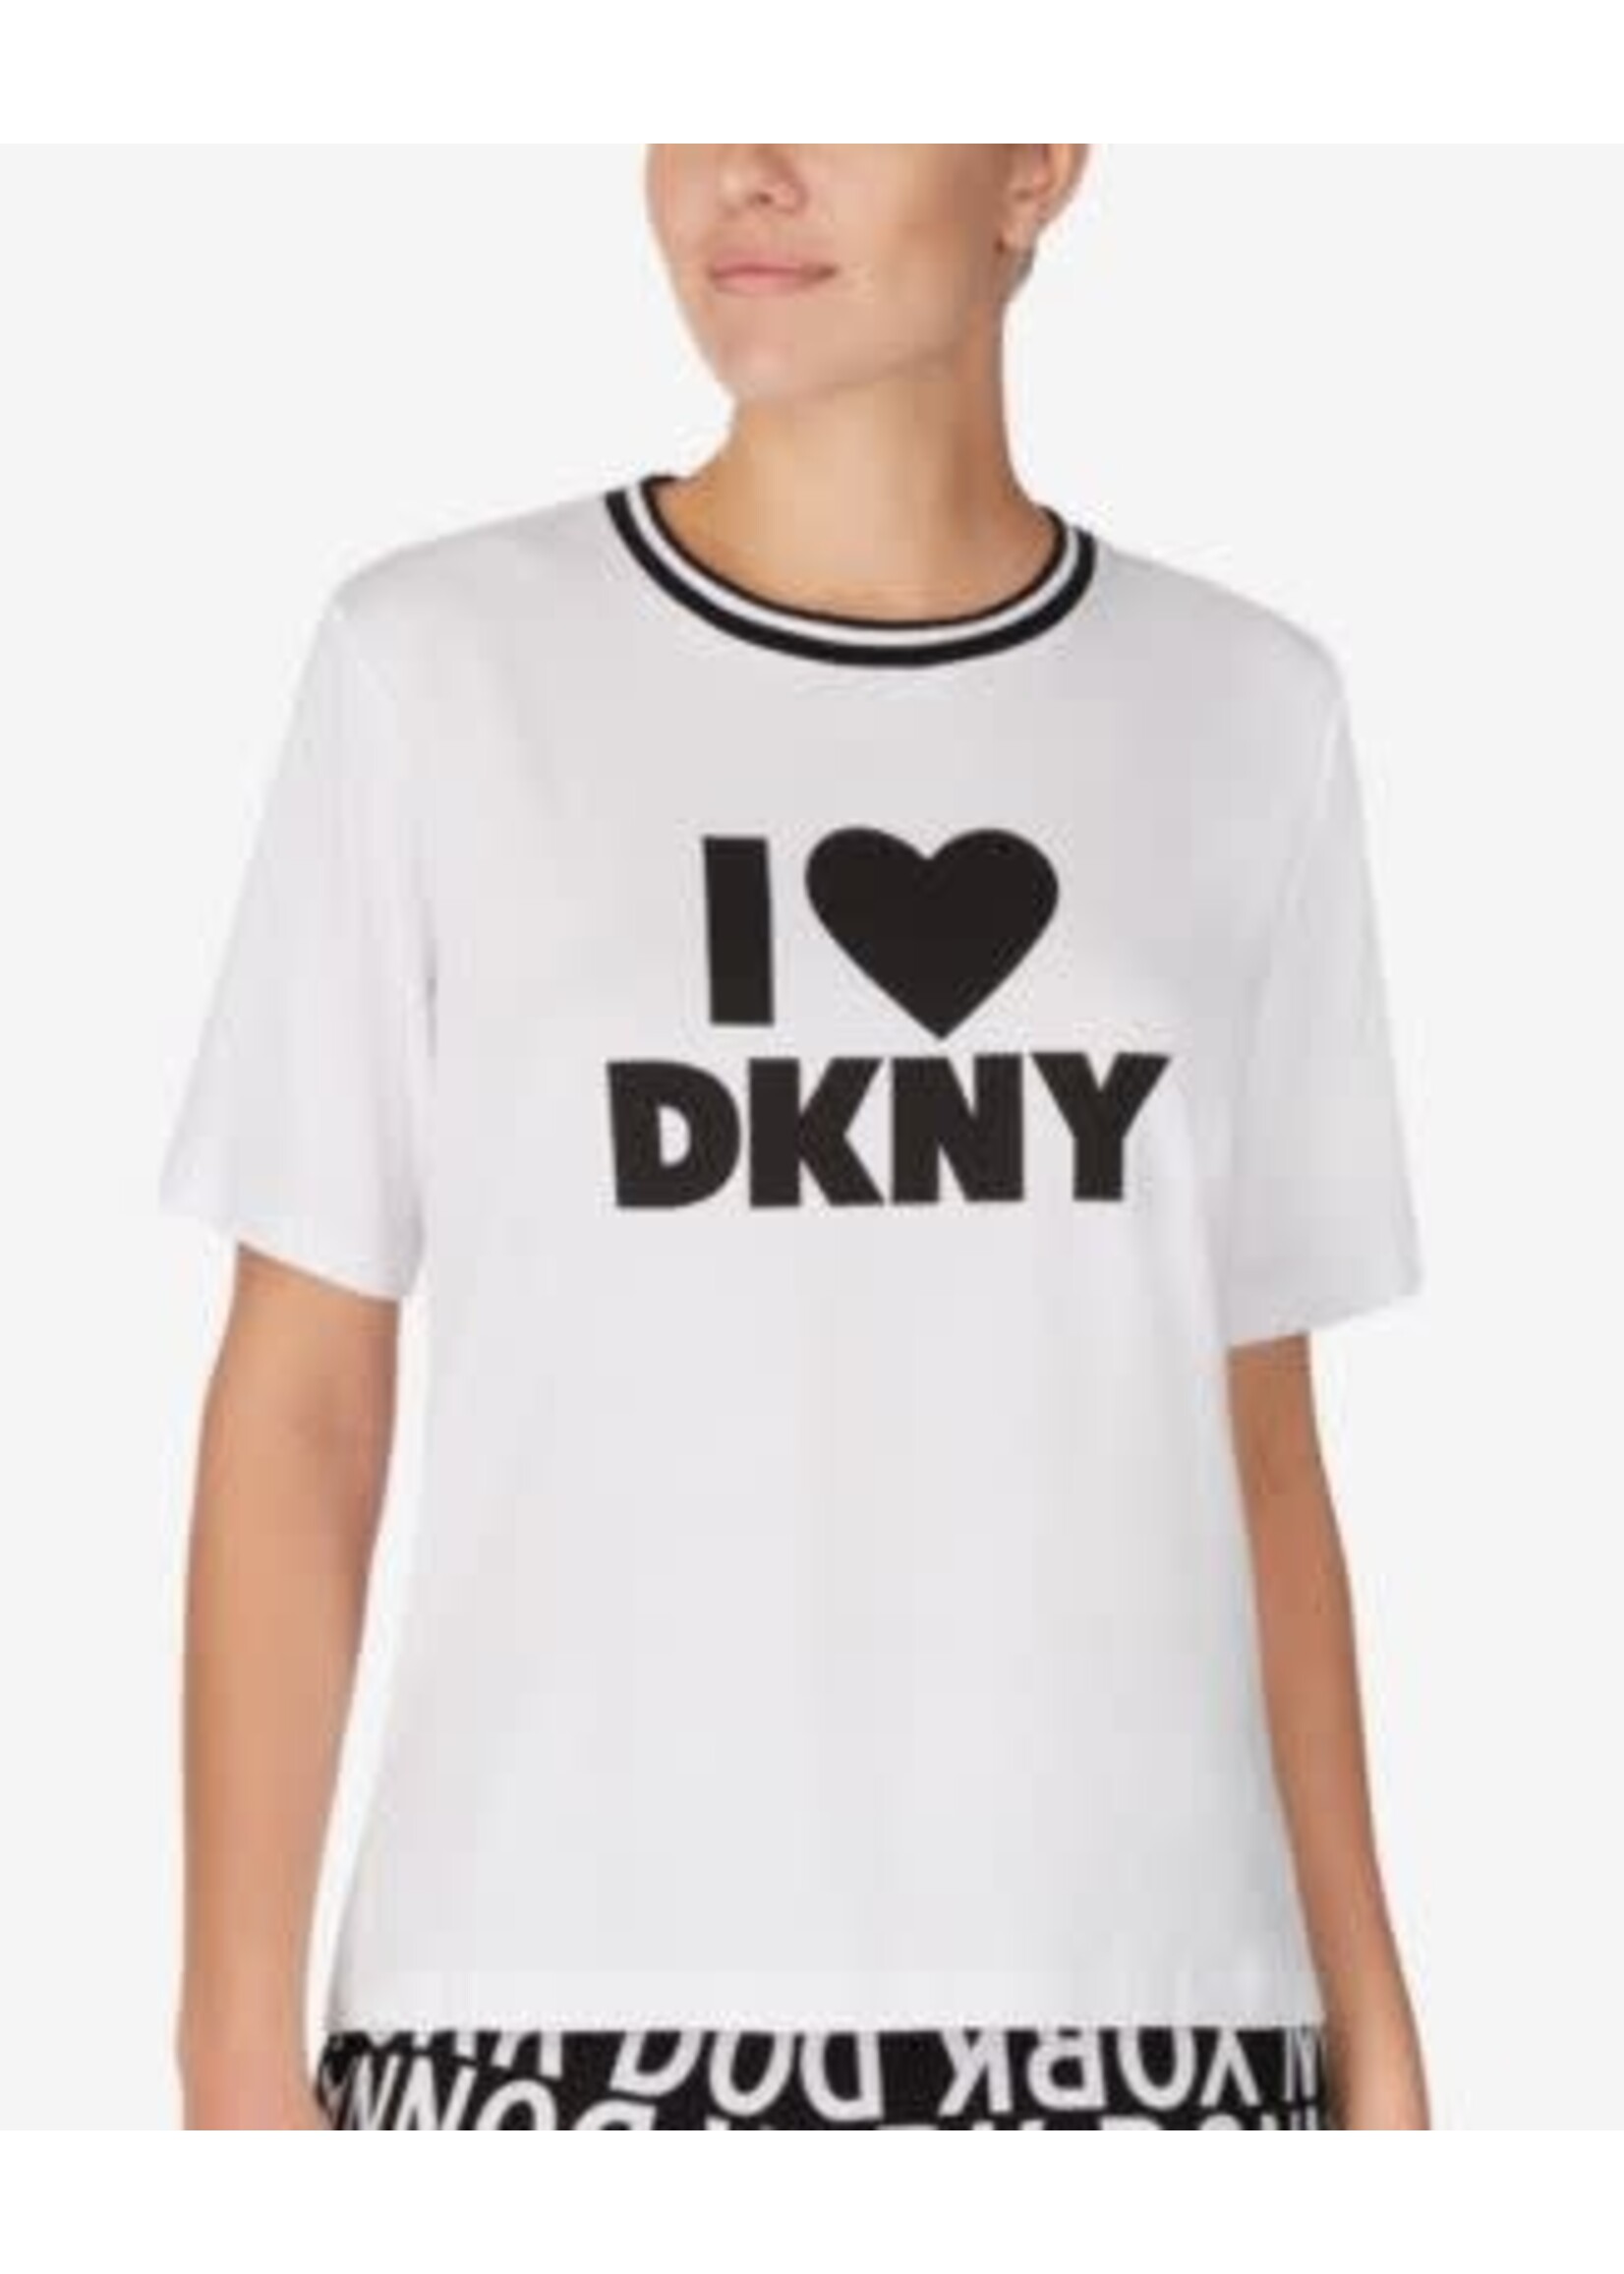 DKNY DKNY I Heart DKNY Leisure Top